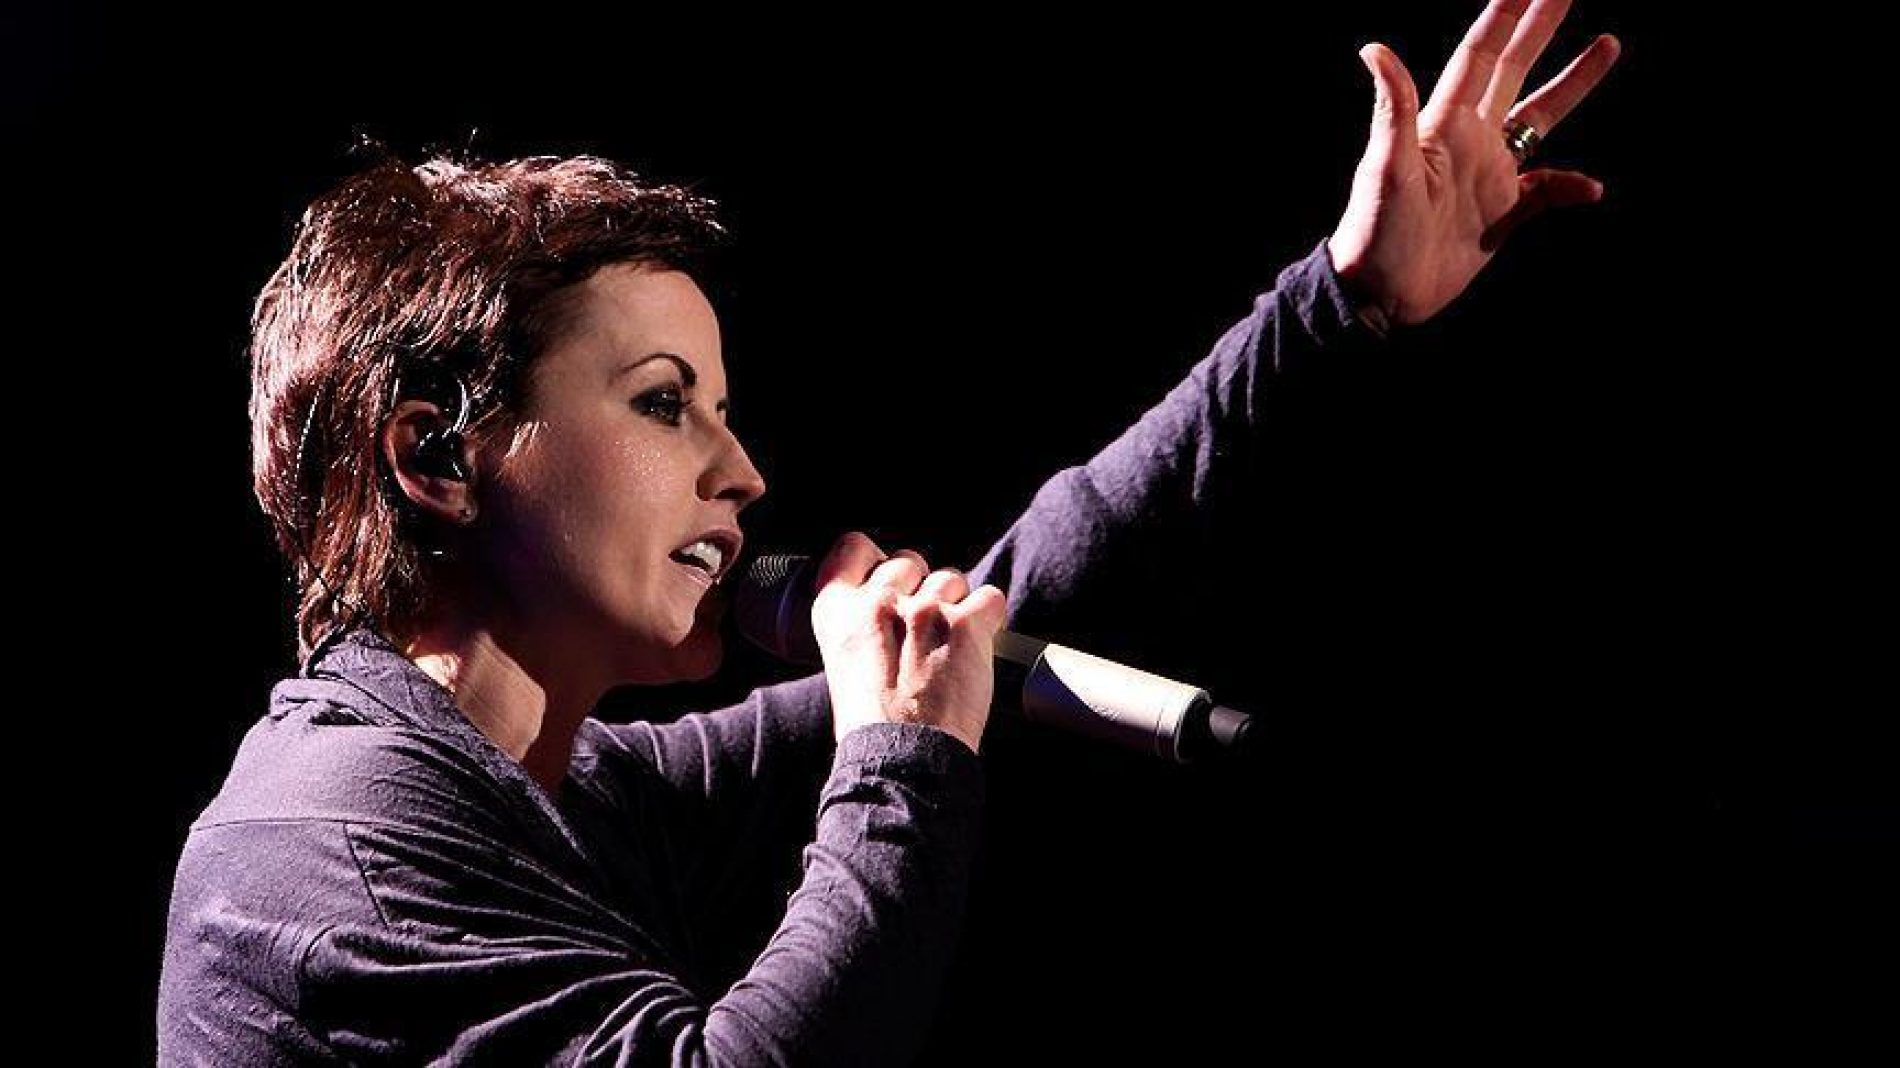 Pjevačica The Cranberriesa preminula u 46. godini – Na vrhuncu karijere pjevala o Bosni (Video)